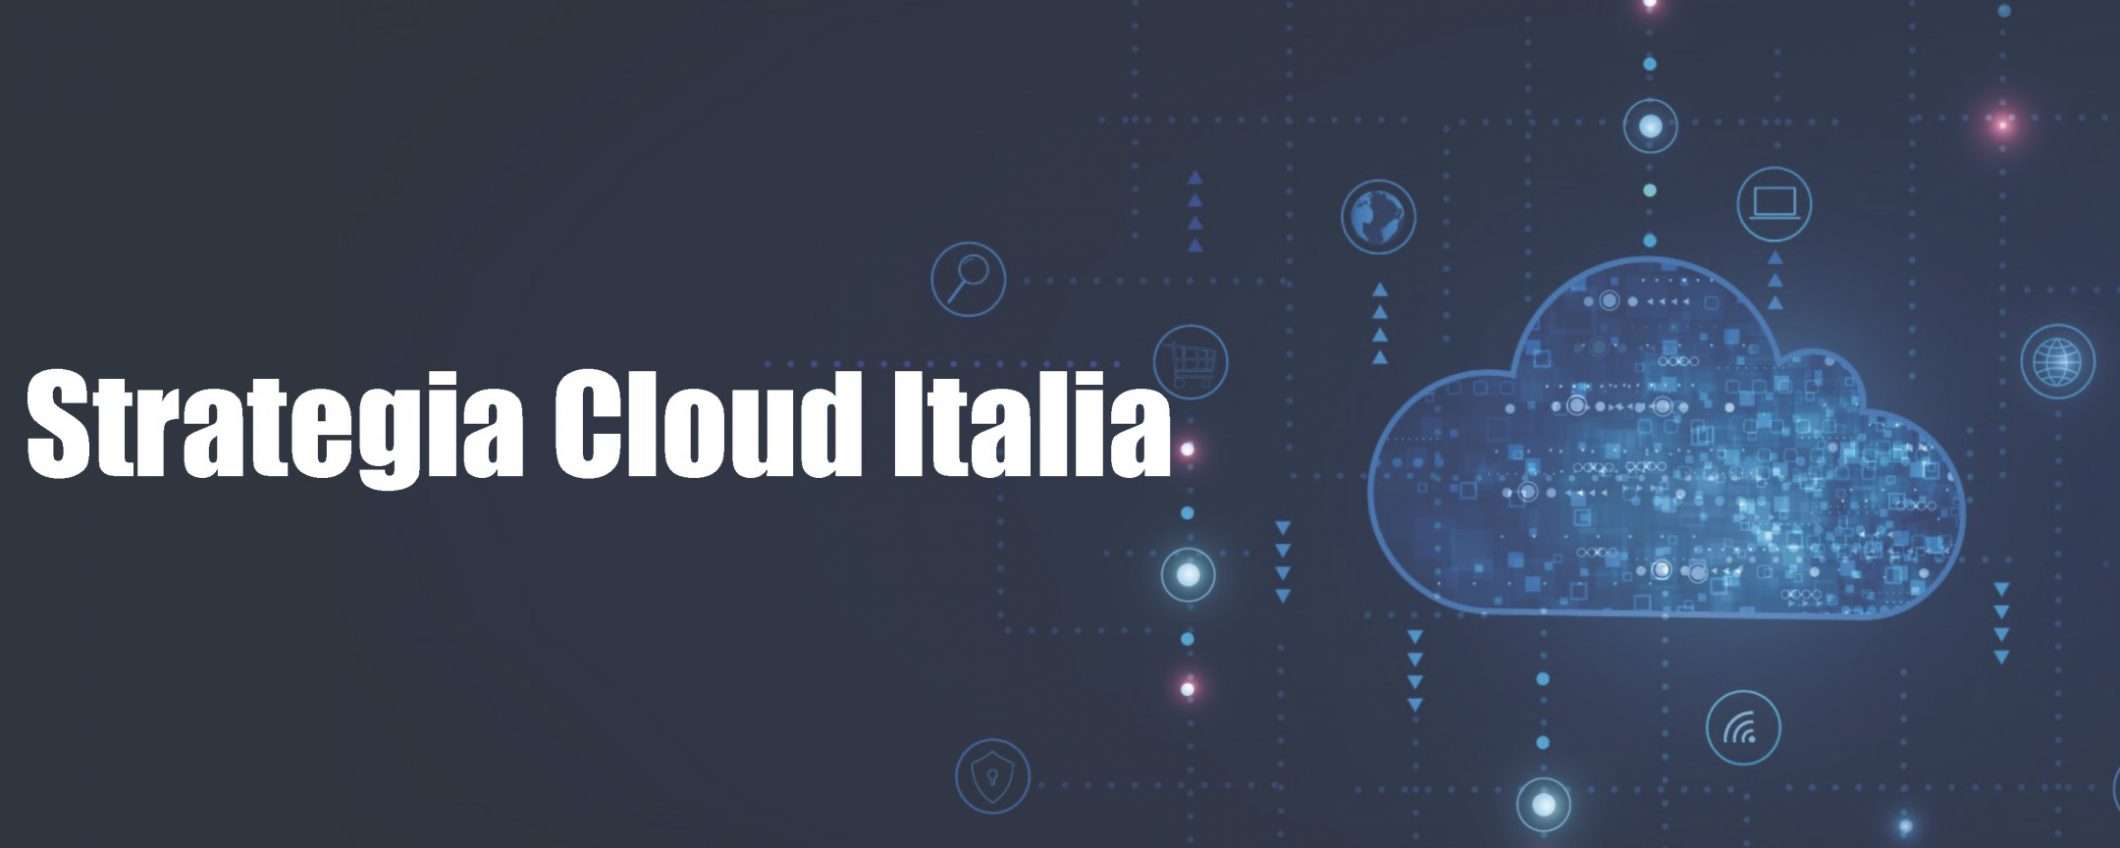 Cloud Italia: autonomia, controllo dati e resilienza